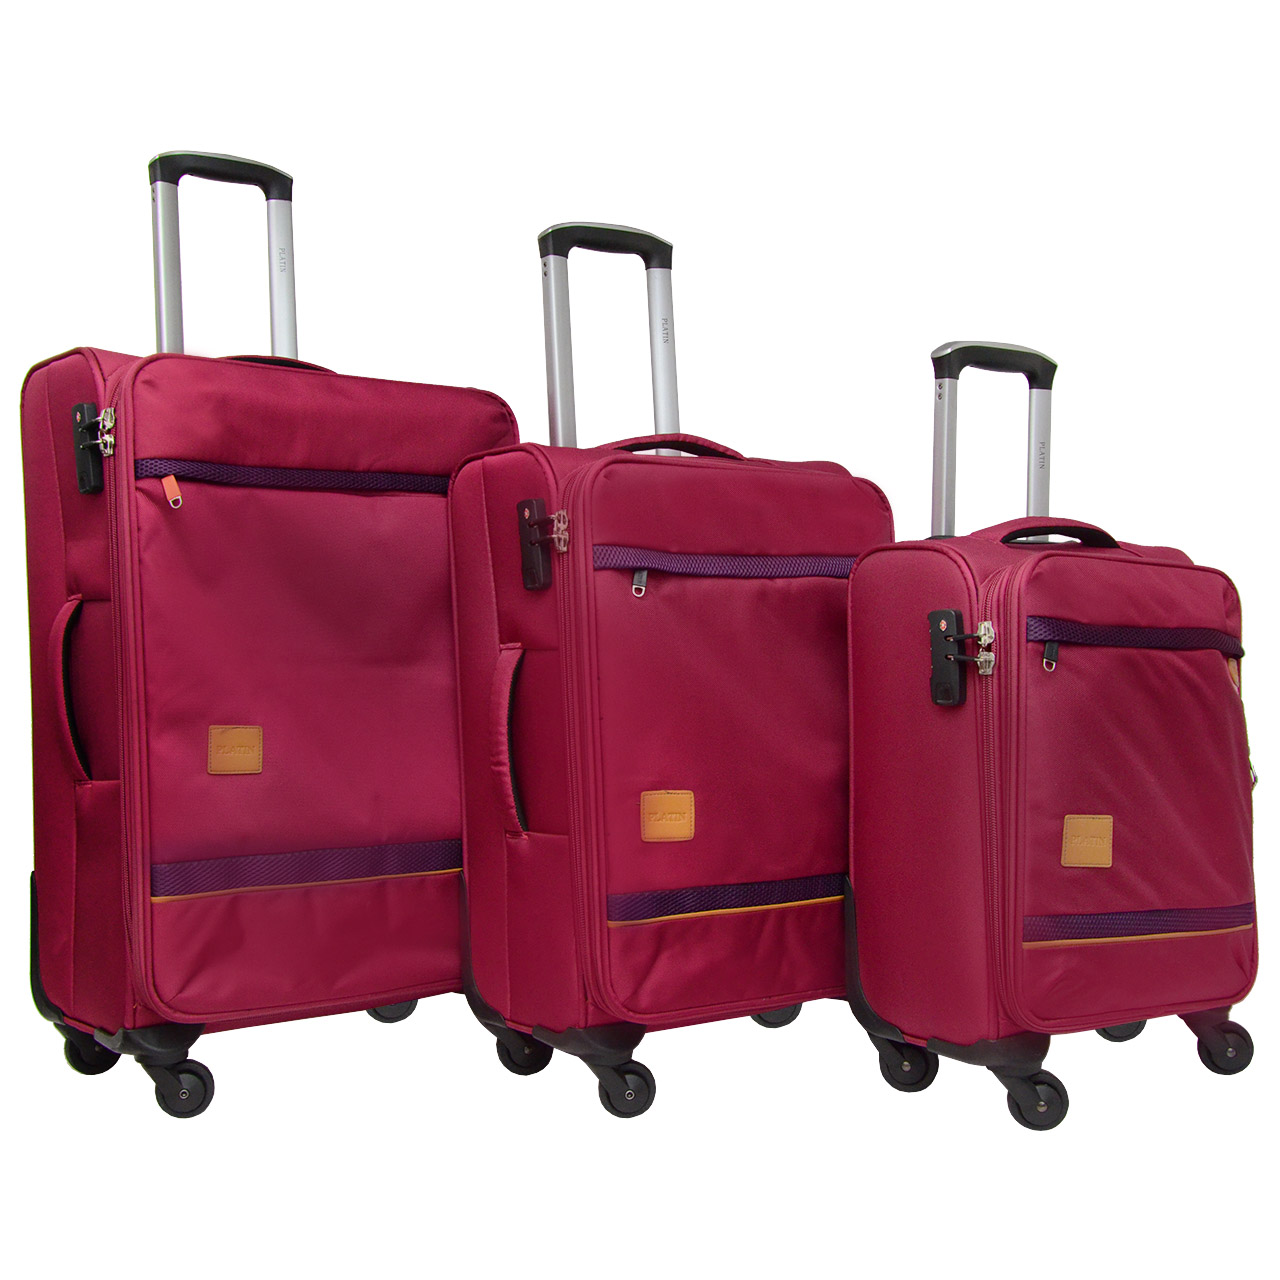 مجموعه سه عددی چمدان پلاتین مدل LP2112